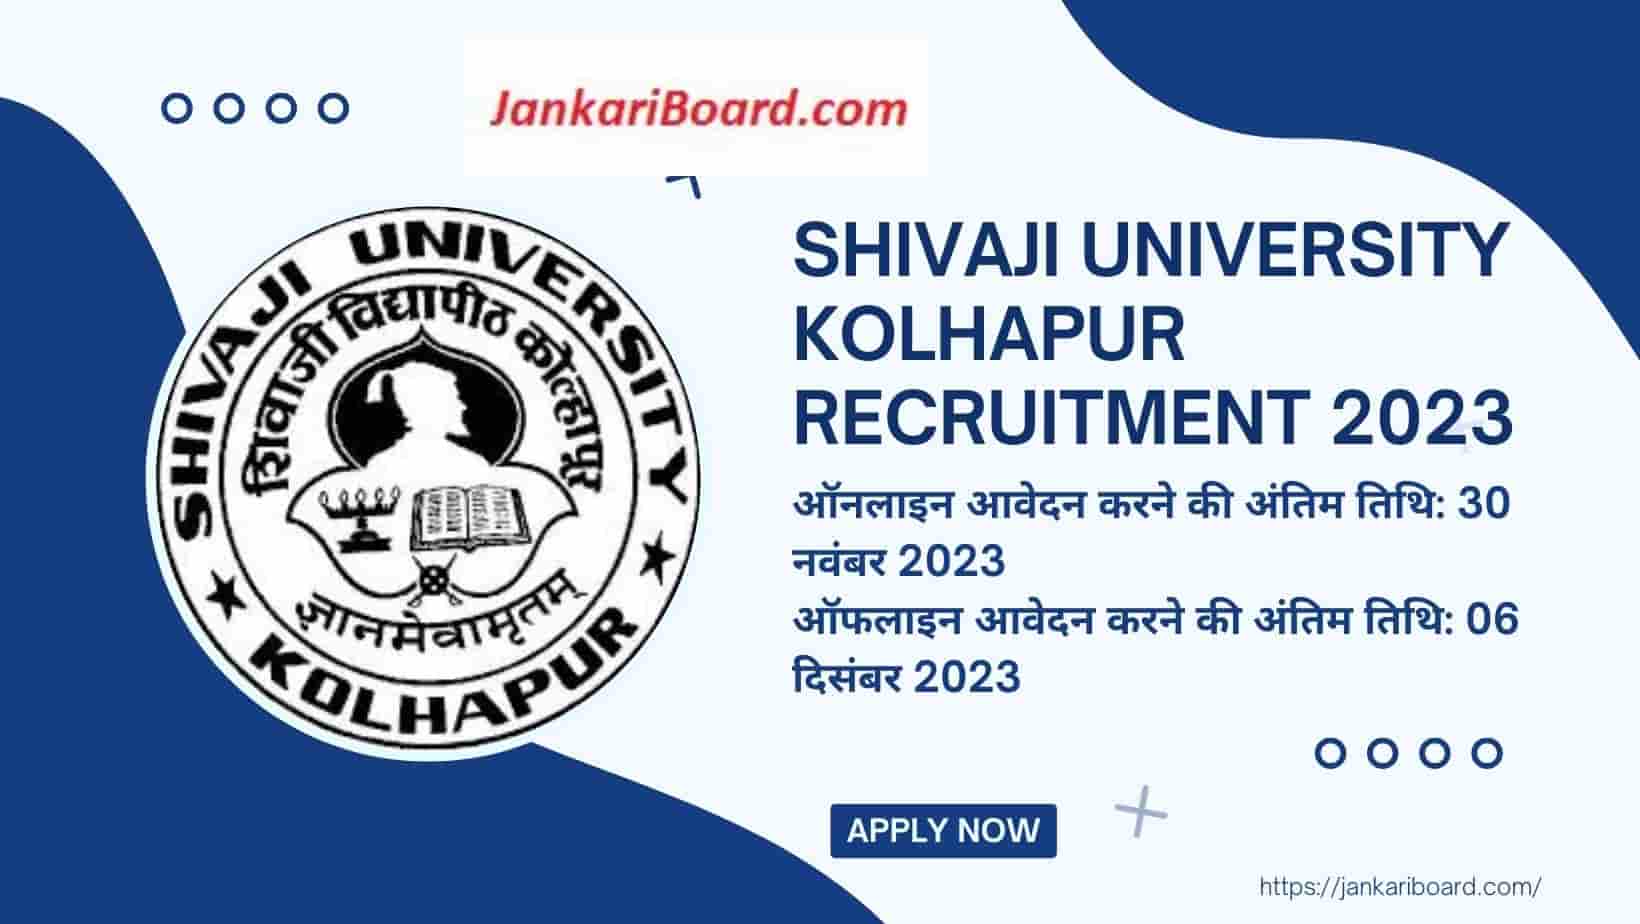 Shivaji University Kolhapur Recruitment 2023